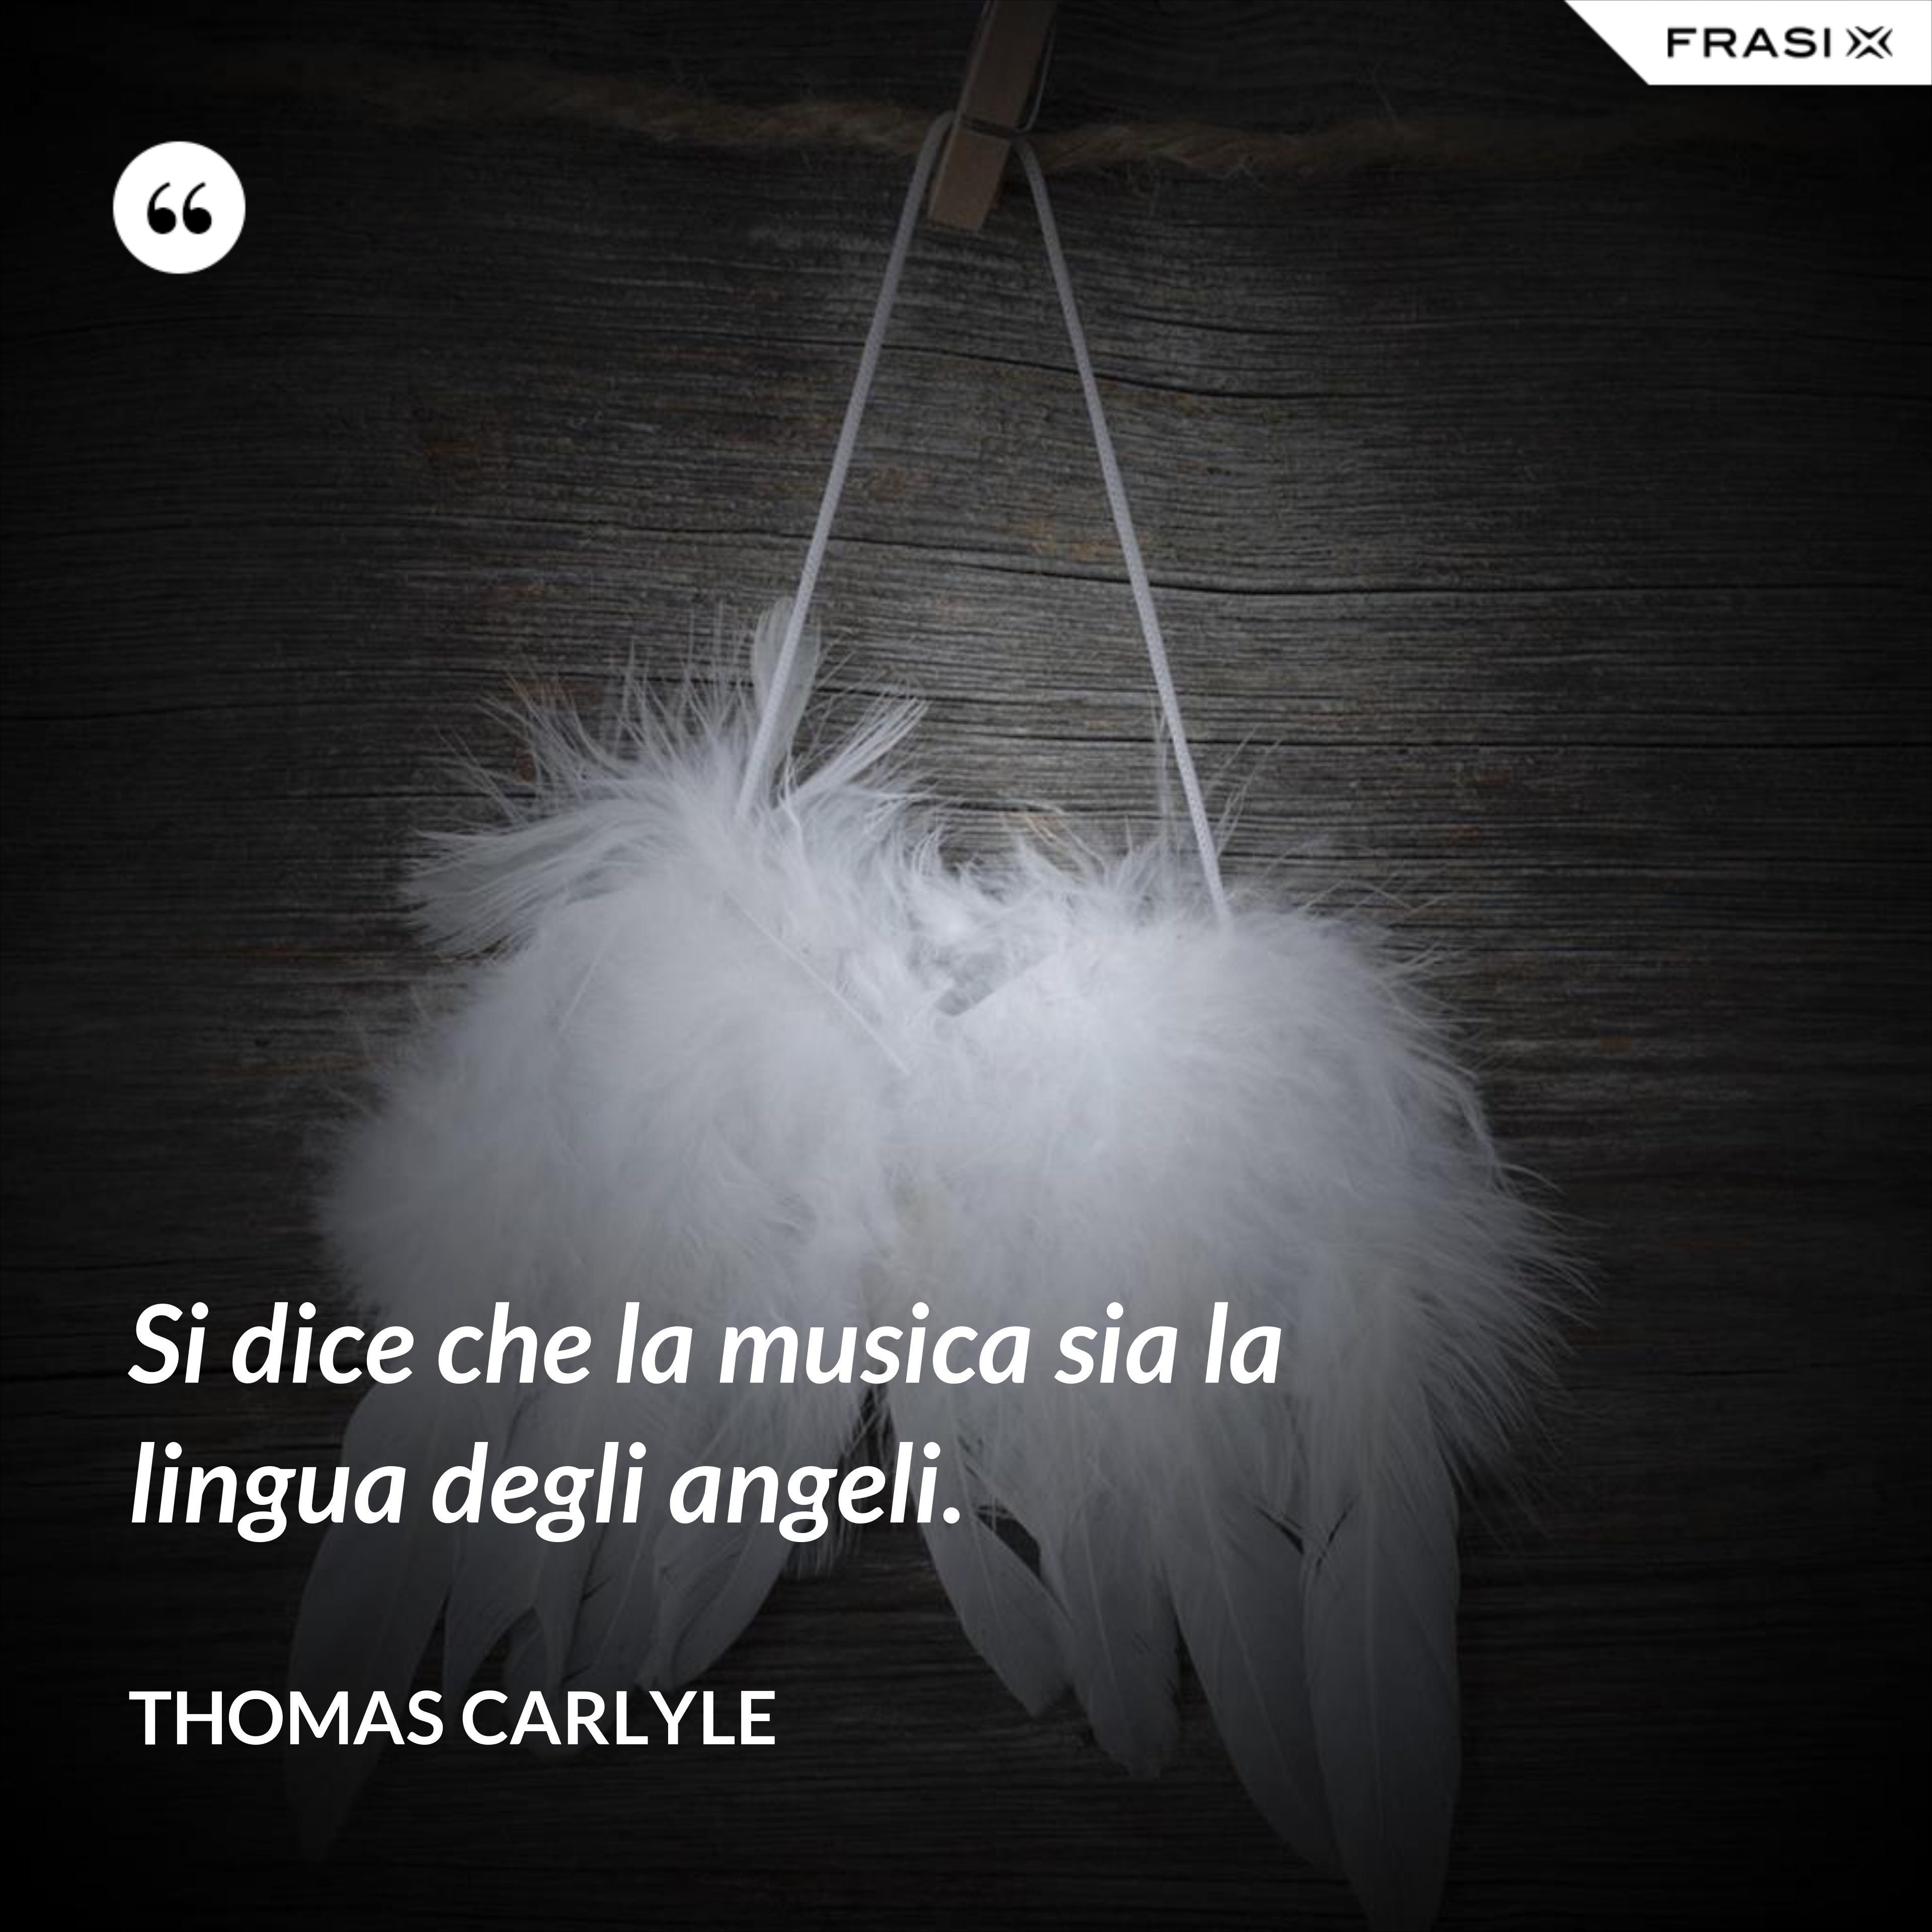 Si dice che la musica sia la lingua degli angeli. - Thomas Carlyle